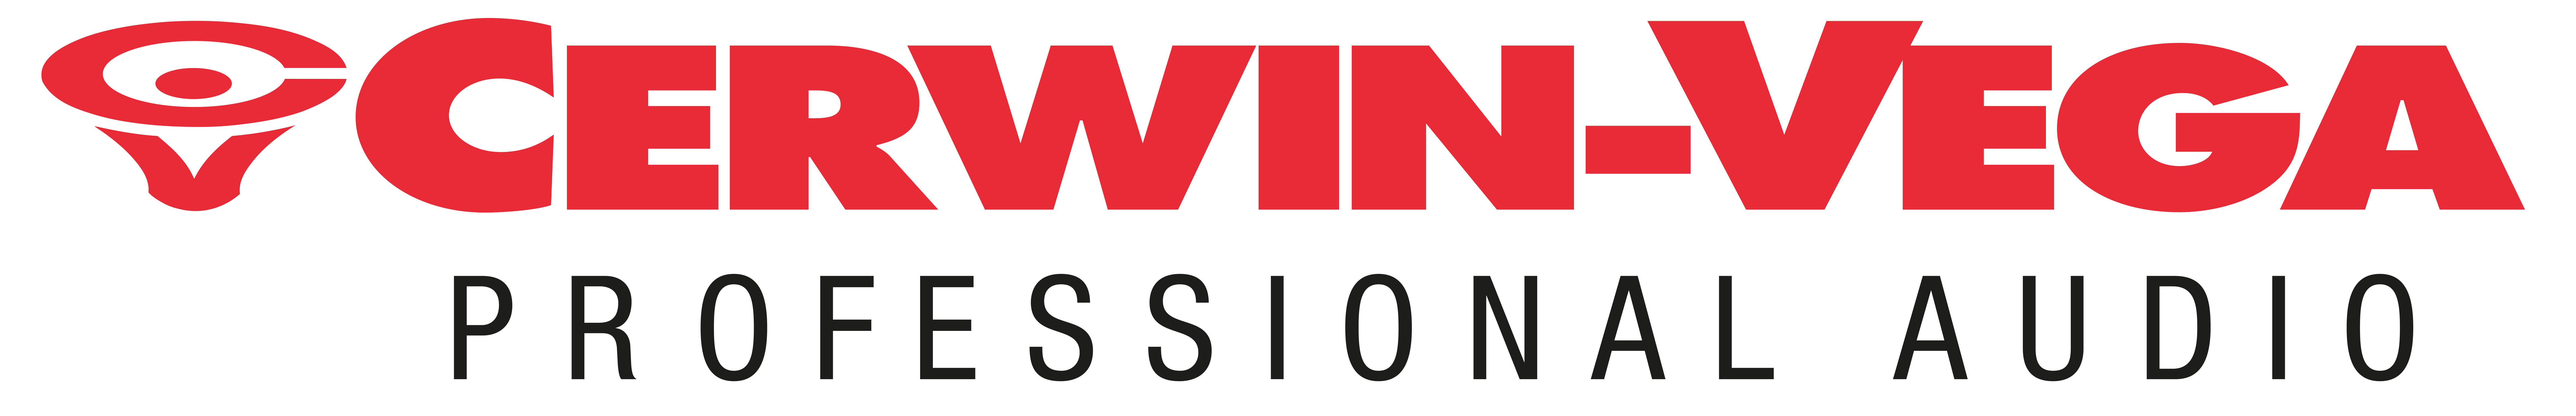 CV Professional Audio Logo png copy